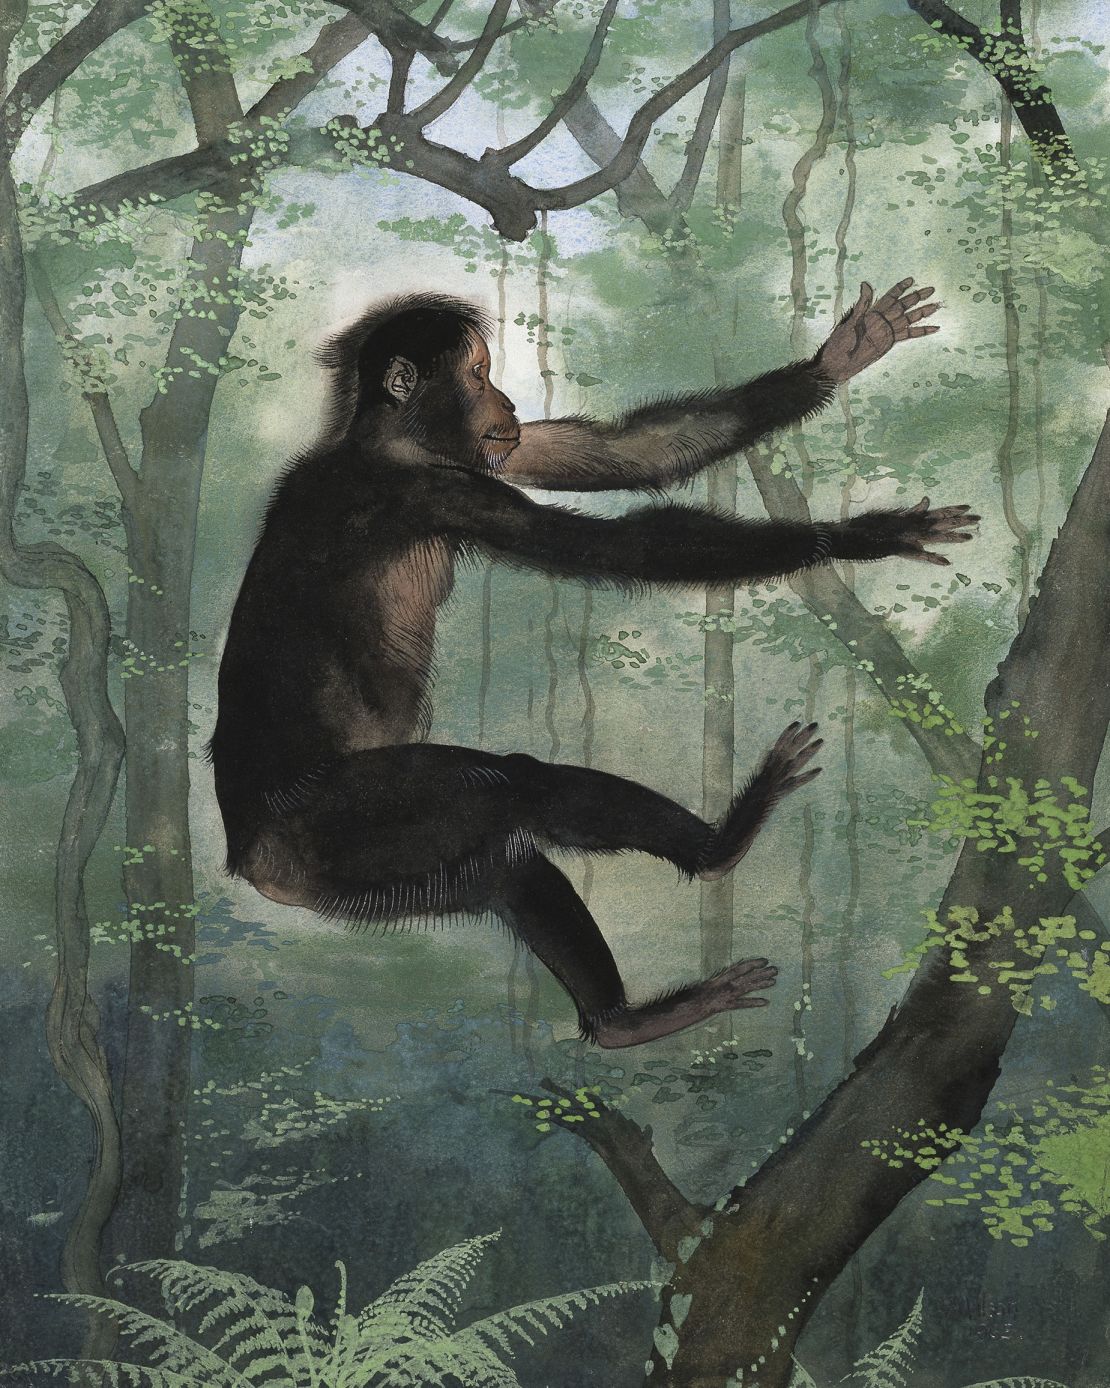 Los fósiles muestran que el antiguo primate Proconsul africanus, que se muestra en la ilustración de arriba, vivía en árboles sin cola.